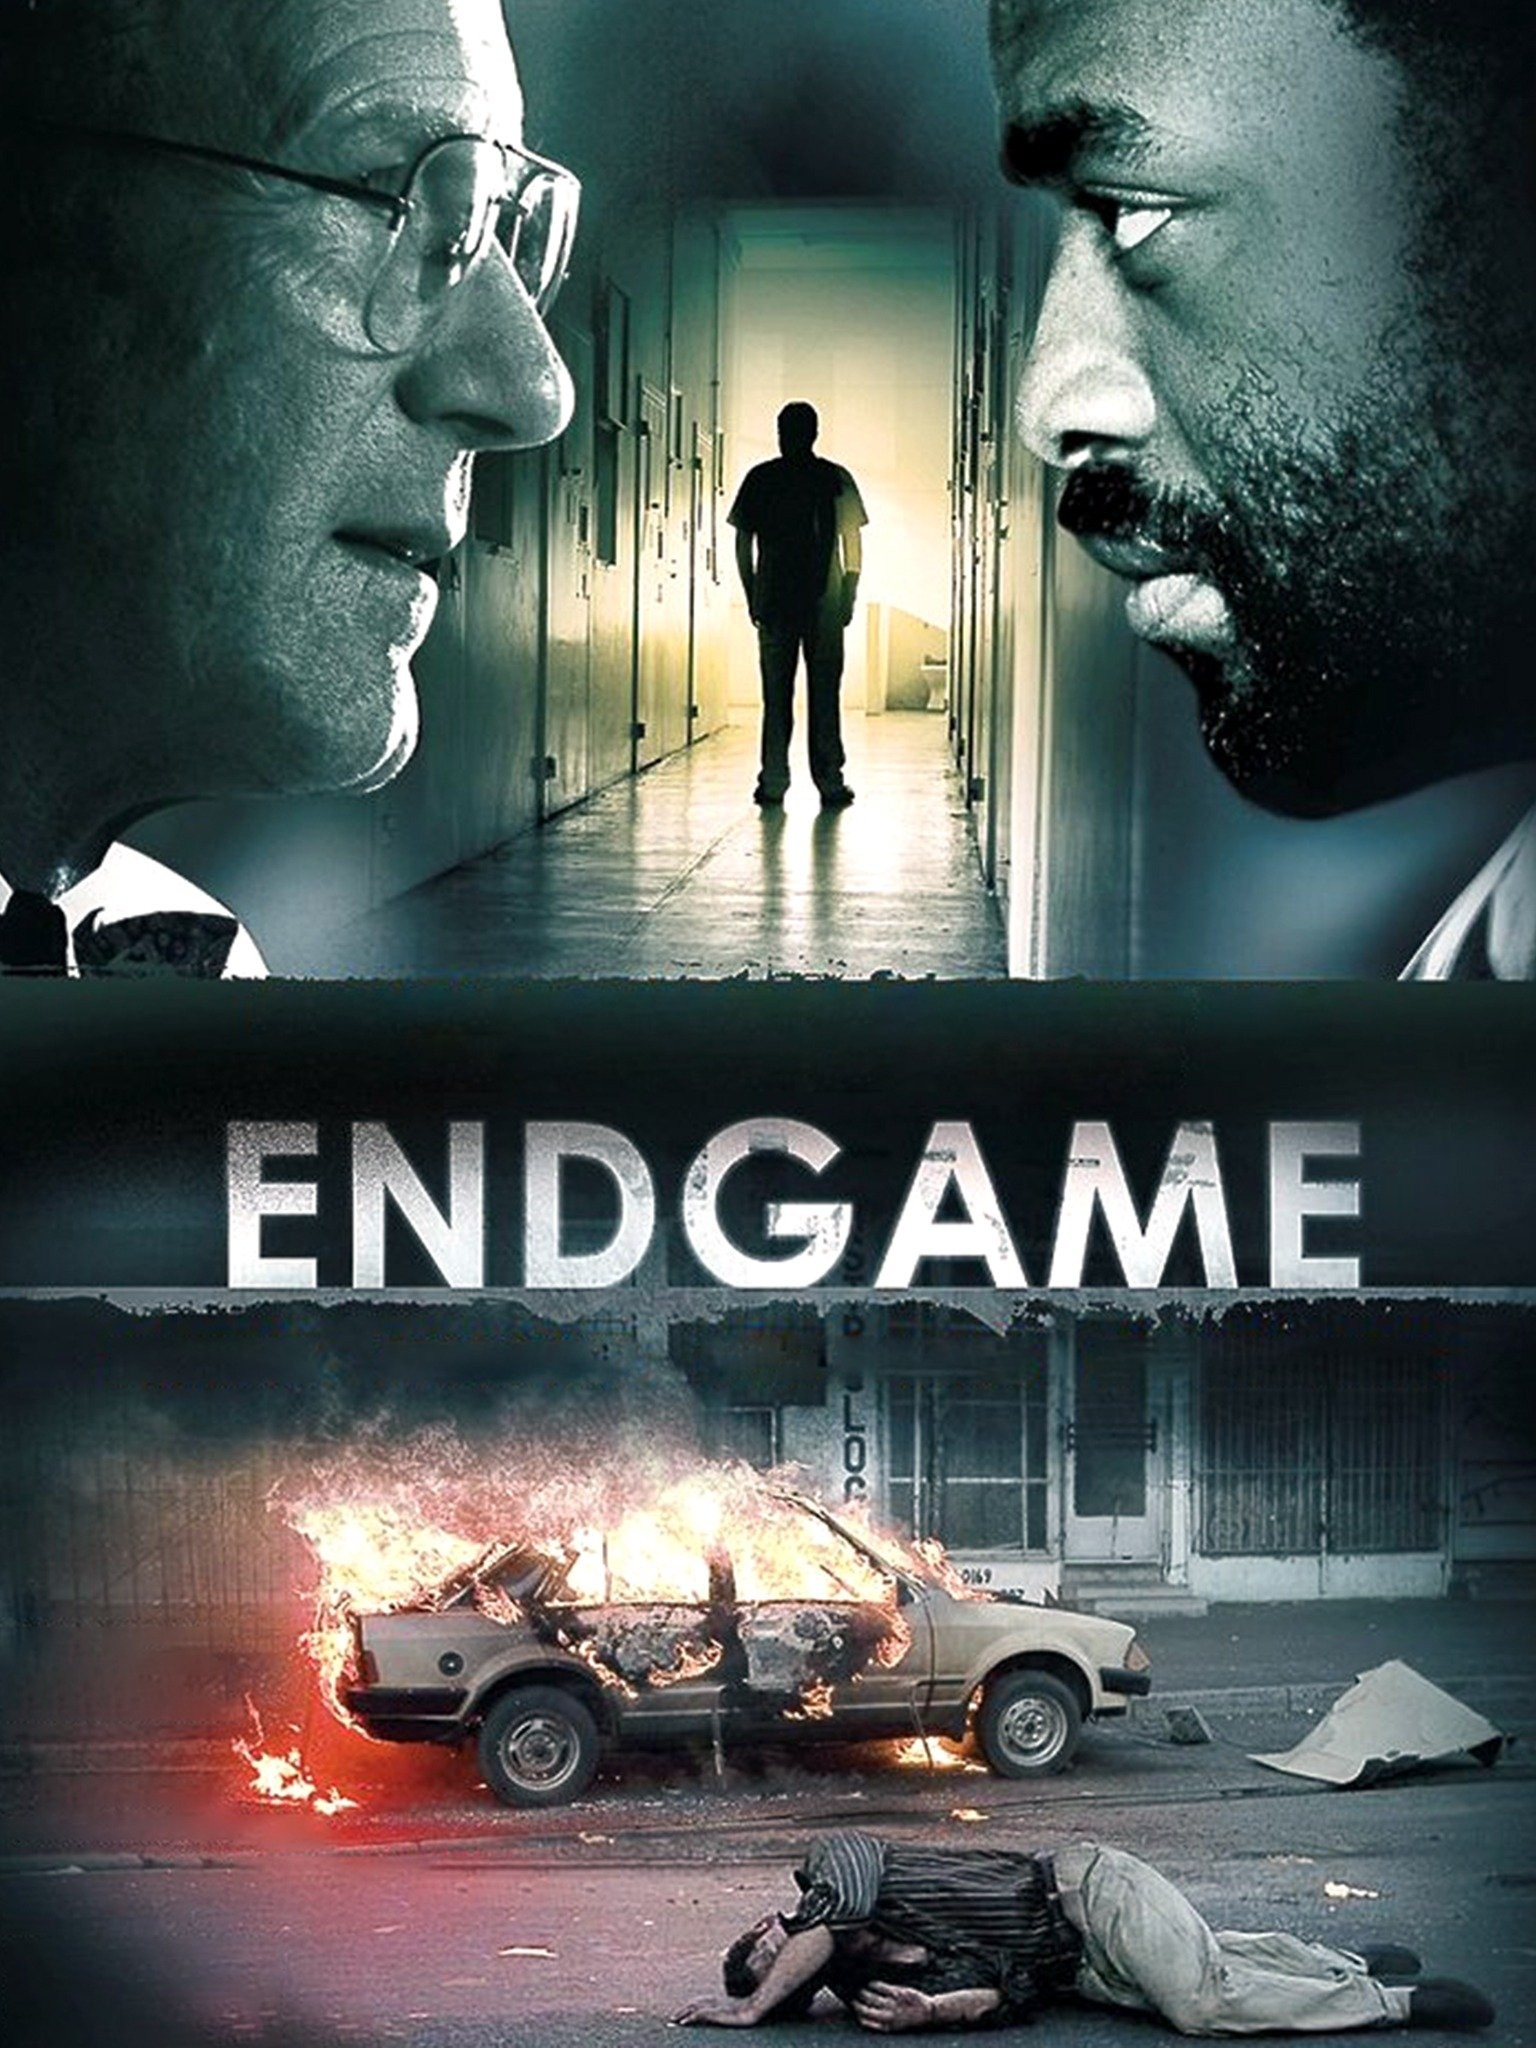 Endgame (2007 film) - Wikipedia